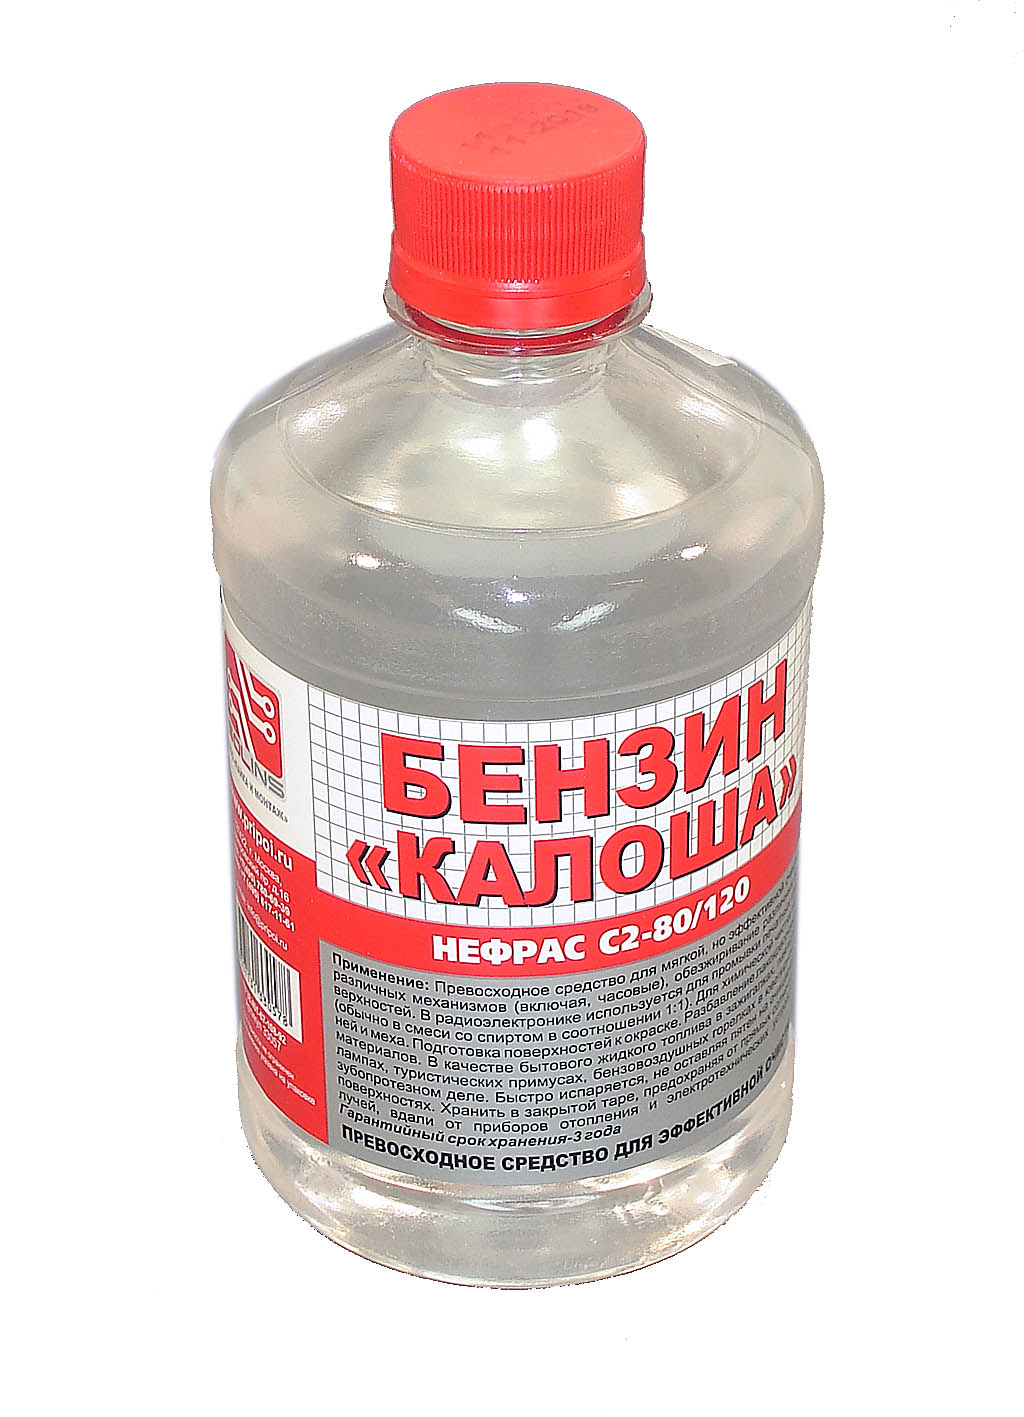 Купить растворитель "Калоша" РБ, бутылка 0,5 л